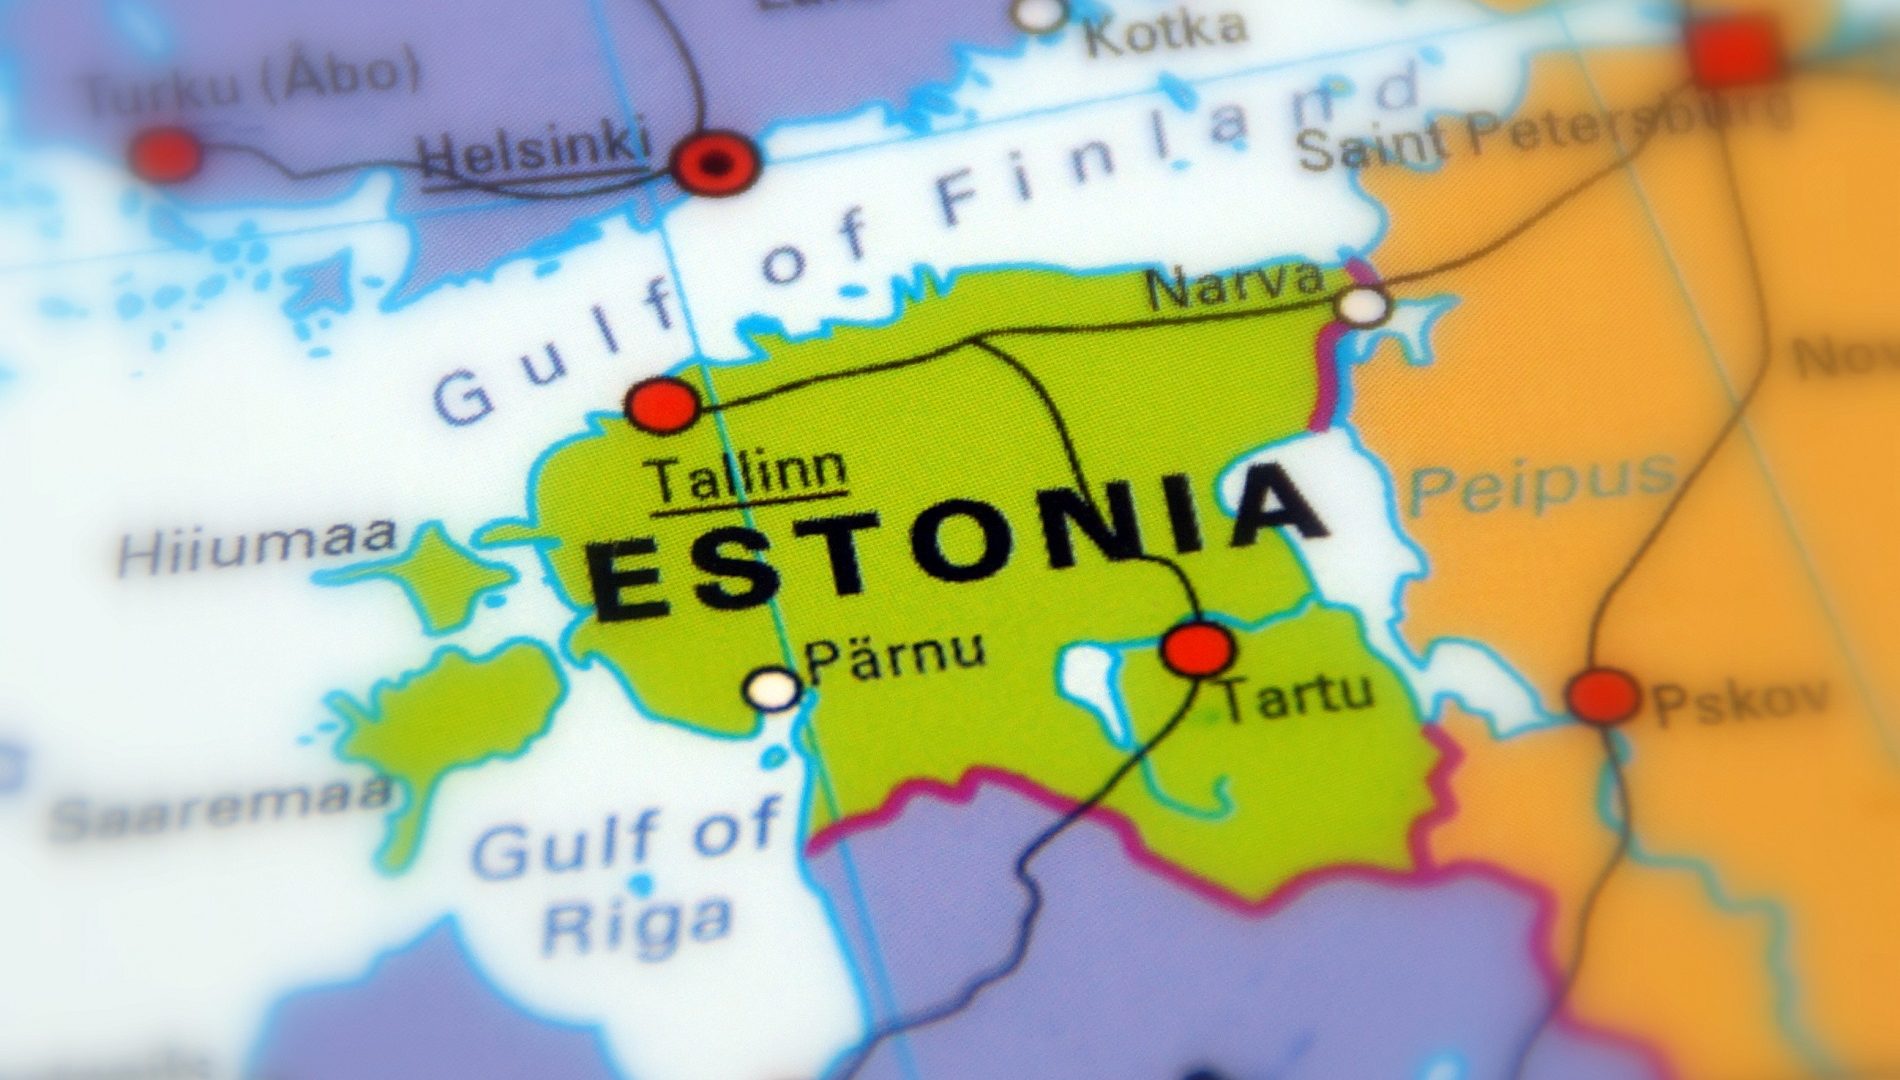 nuova vita estonia